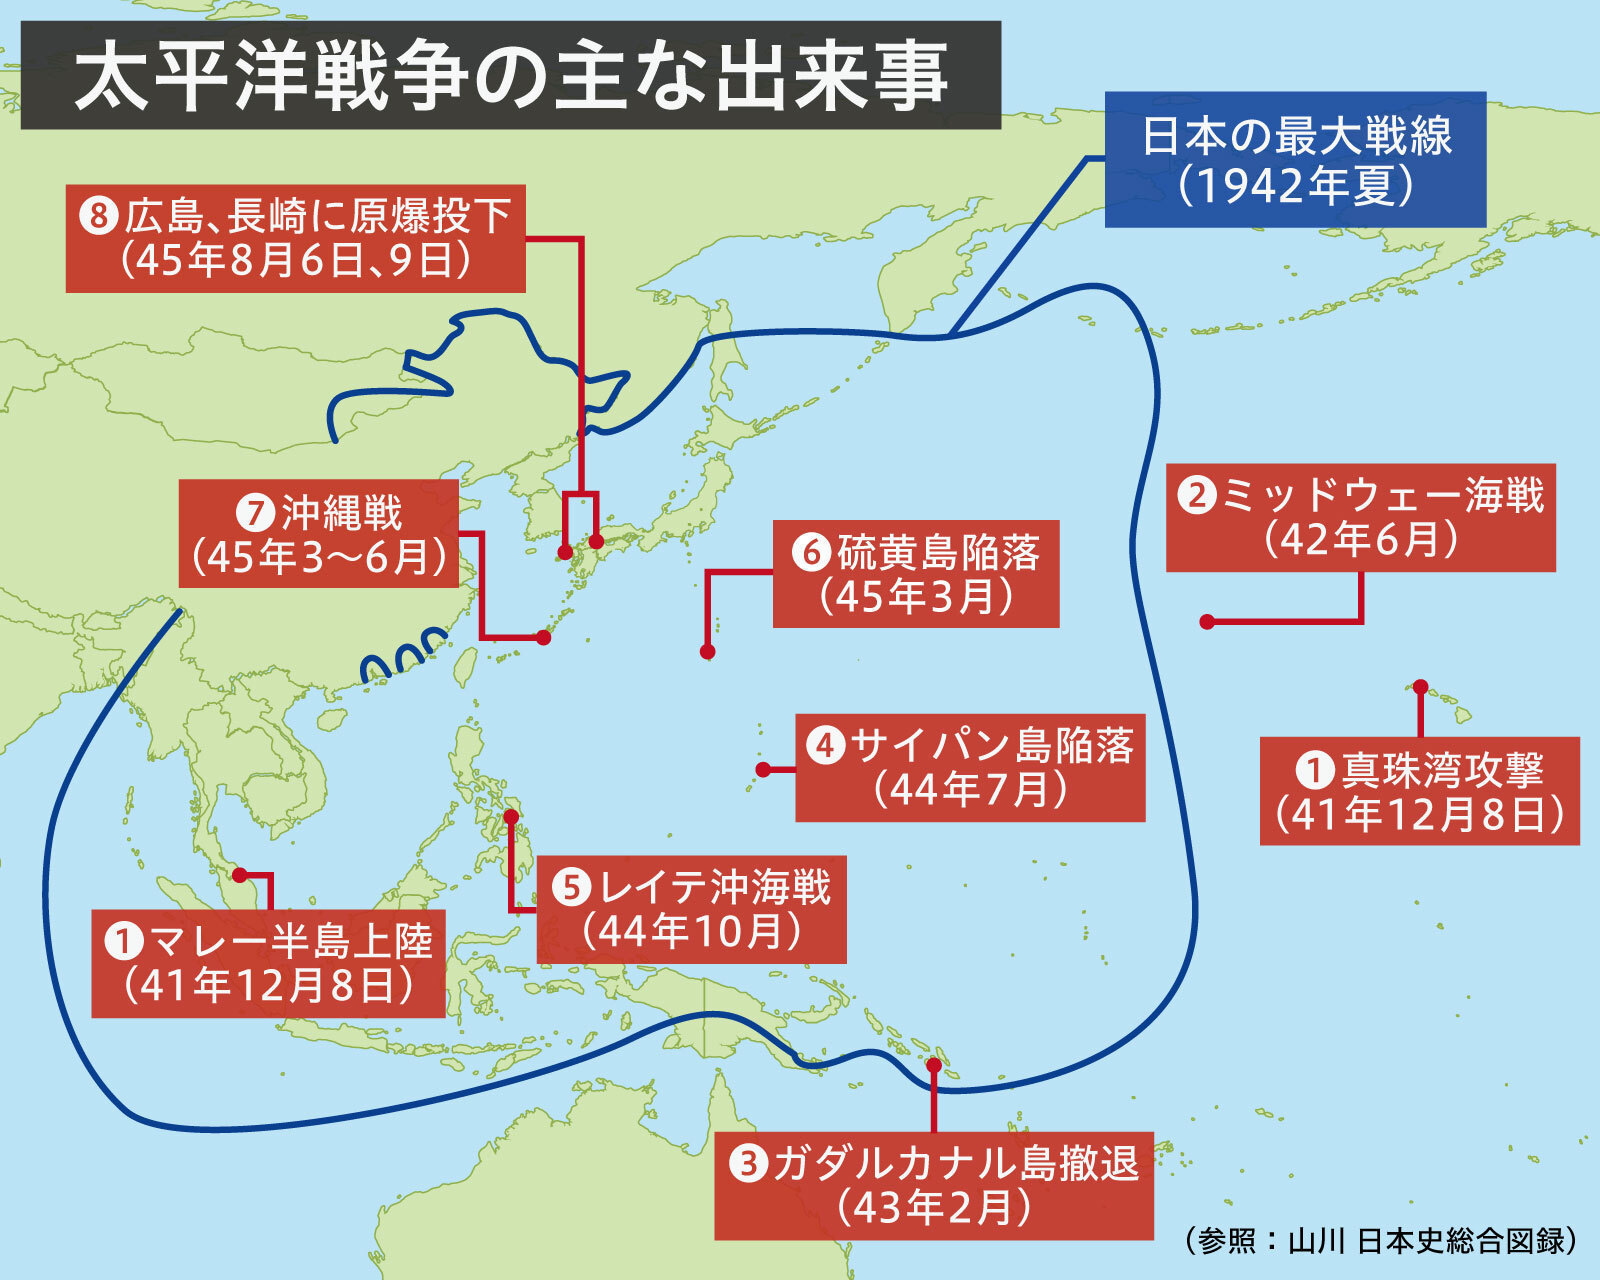 アジアでは「日本 VS アメリカ合衆国」が繰り広げられた太平洋戦争